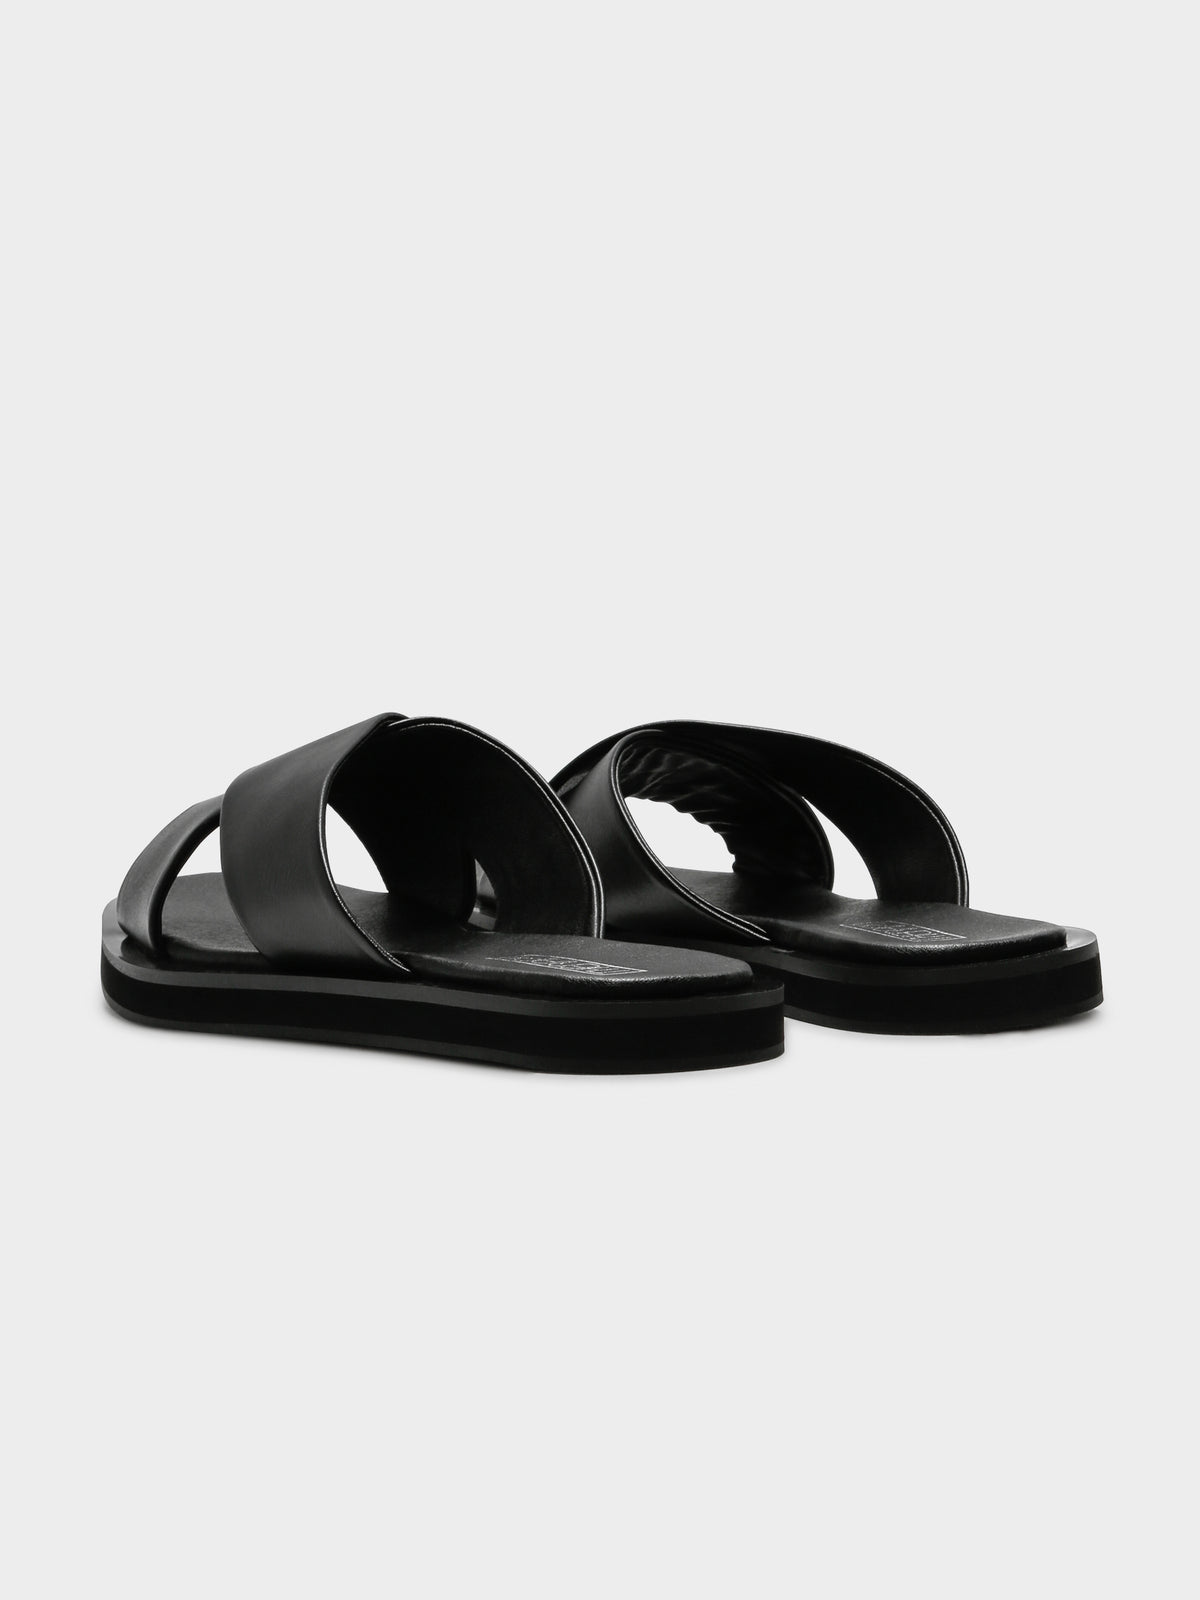 Rosie Sandals in Black